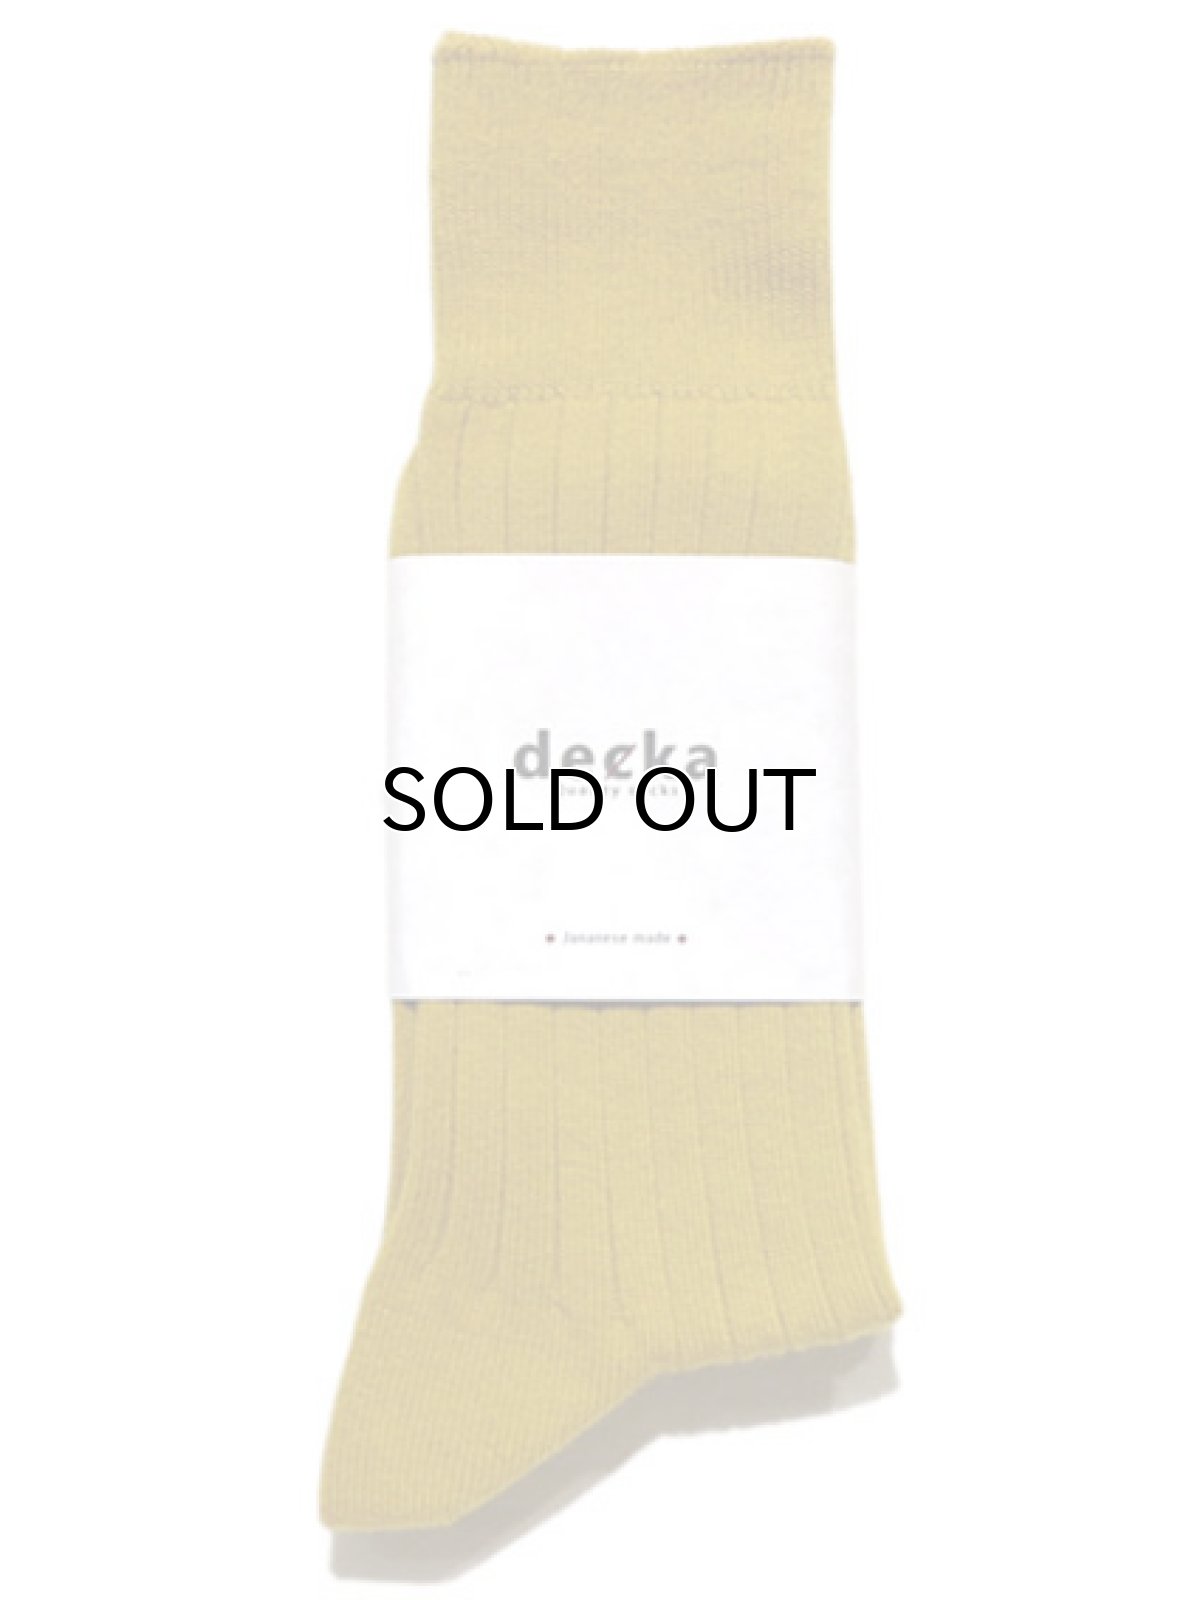 画像1: decka quality socks "144N PLAIN SOCKS"　made in JAPAN　ONE SIZE　color : YELLOW (1)